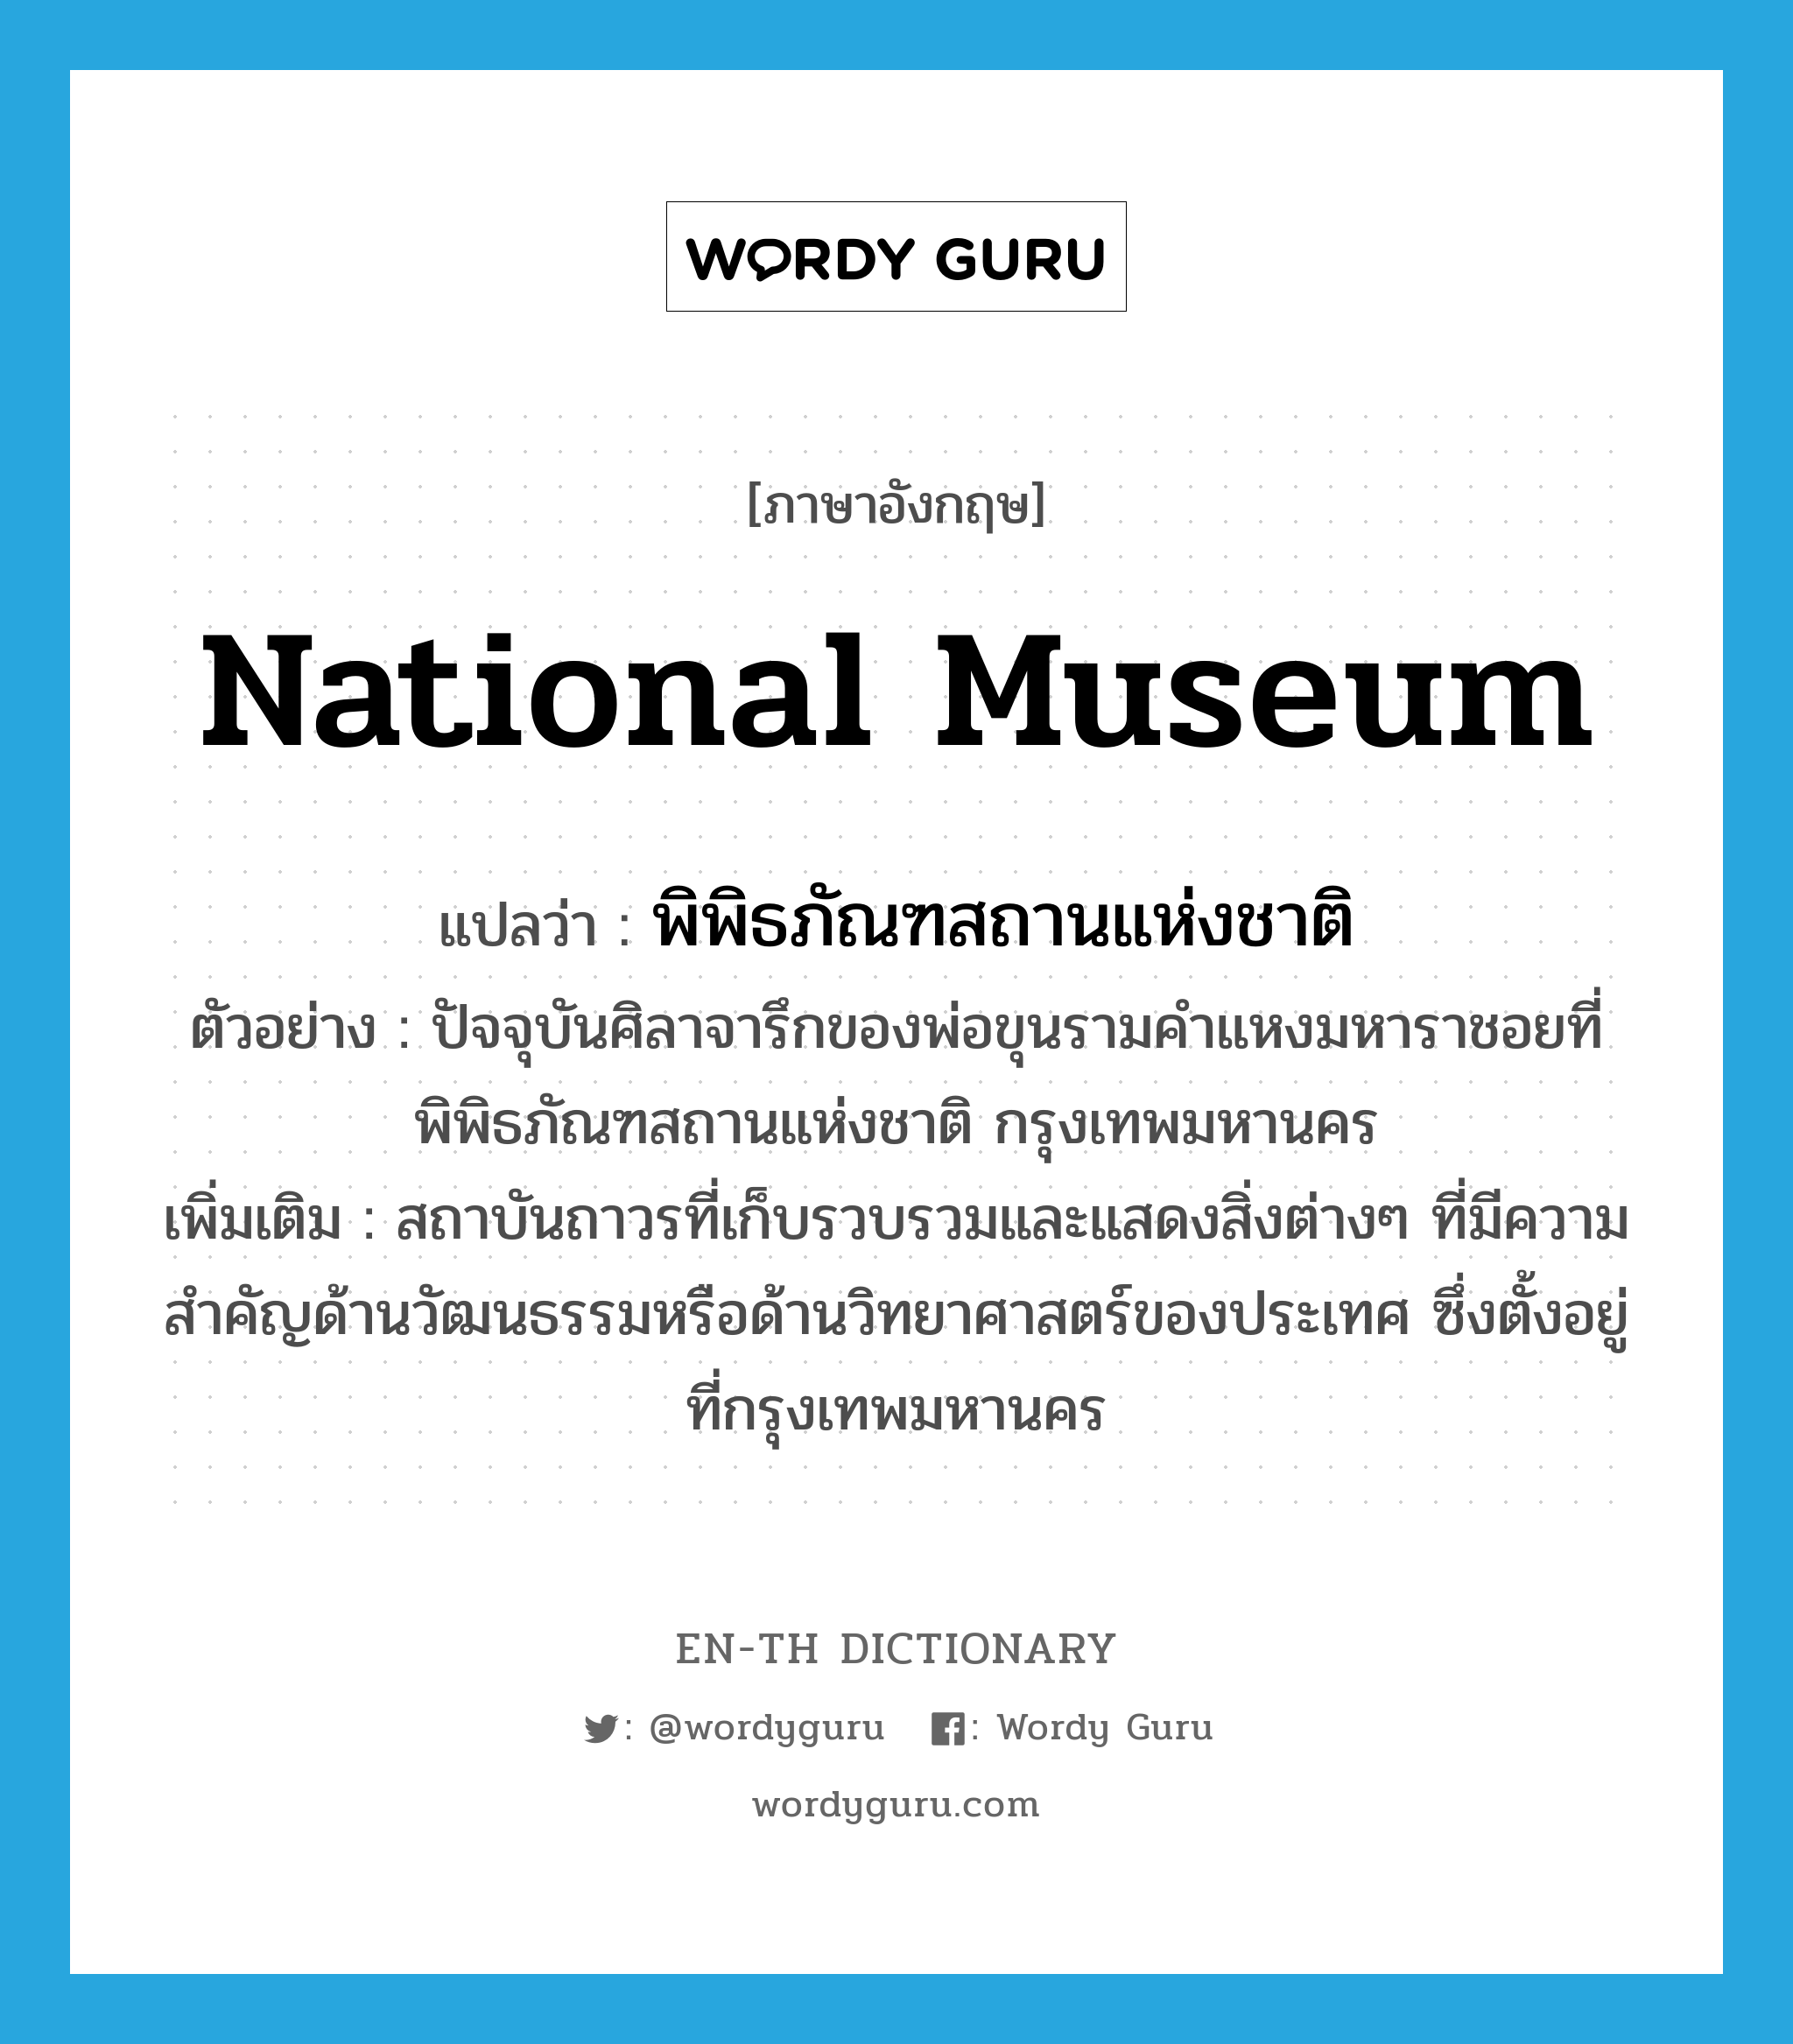 พิพิธภัณฑสถานแห่งชาติ ภาษาอังกฤษ?, คำศัพท์ภาษาอังกฤษ พิพิธภัณฑสถานแห่งชาติ แปลว่า National Museum ประเภท N ตัวอย่าง ปัจจุบันศิลาจารึกของพ่อขุนรามคำแหงมหาราชอยที่พิพิธภัณฑสถานแห่งชาติ กรุงเทพมหานคร เพิ่มเติม สถาบันถาวรที่เก็บรวบรวมและแสดงสิ่งต่างๆ ที่มีความสำคัญด้านวัฒนธรรมหรือด้านวิทยาศาสตร์ของประเทศ ซึ่งตั้งอยู่ที่กรุงเทพมหานคร หมวด N